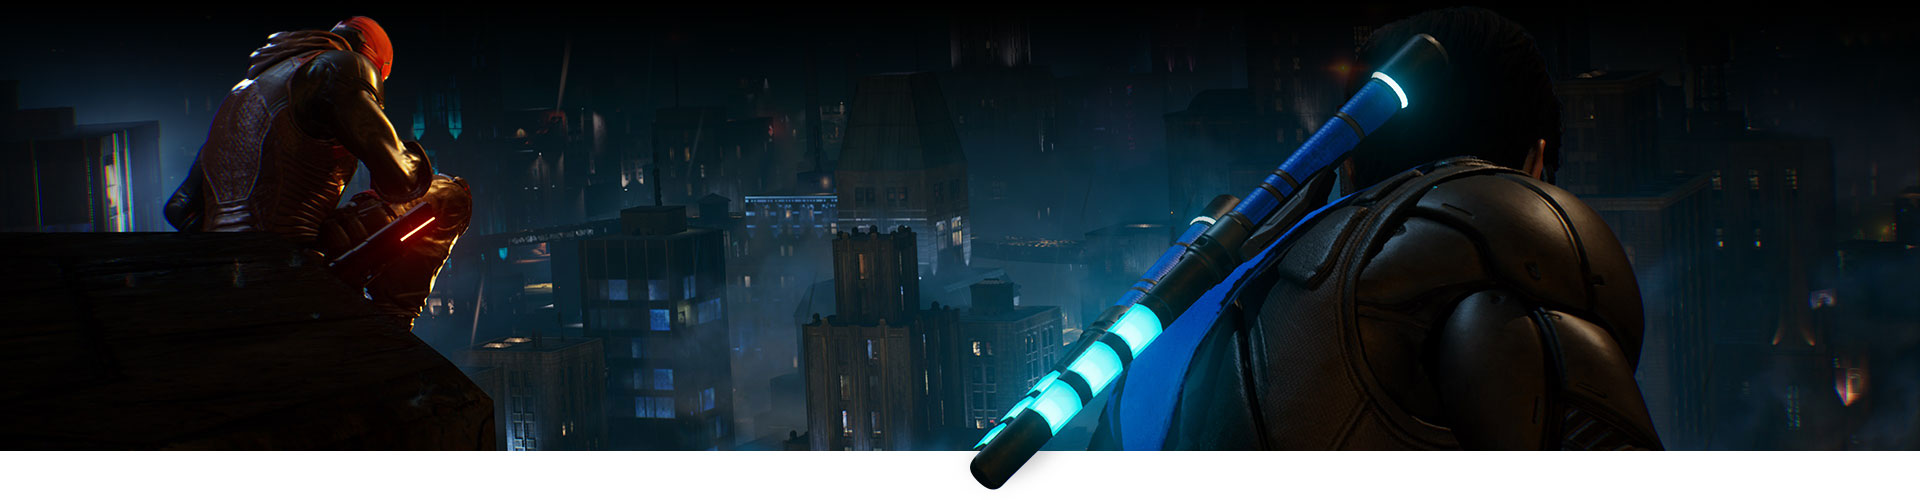 Red Hood und Nightwing sitzen auf einem Dach und blicken über die Stadt.